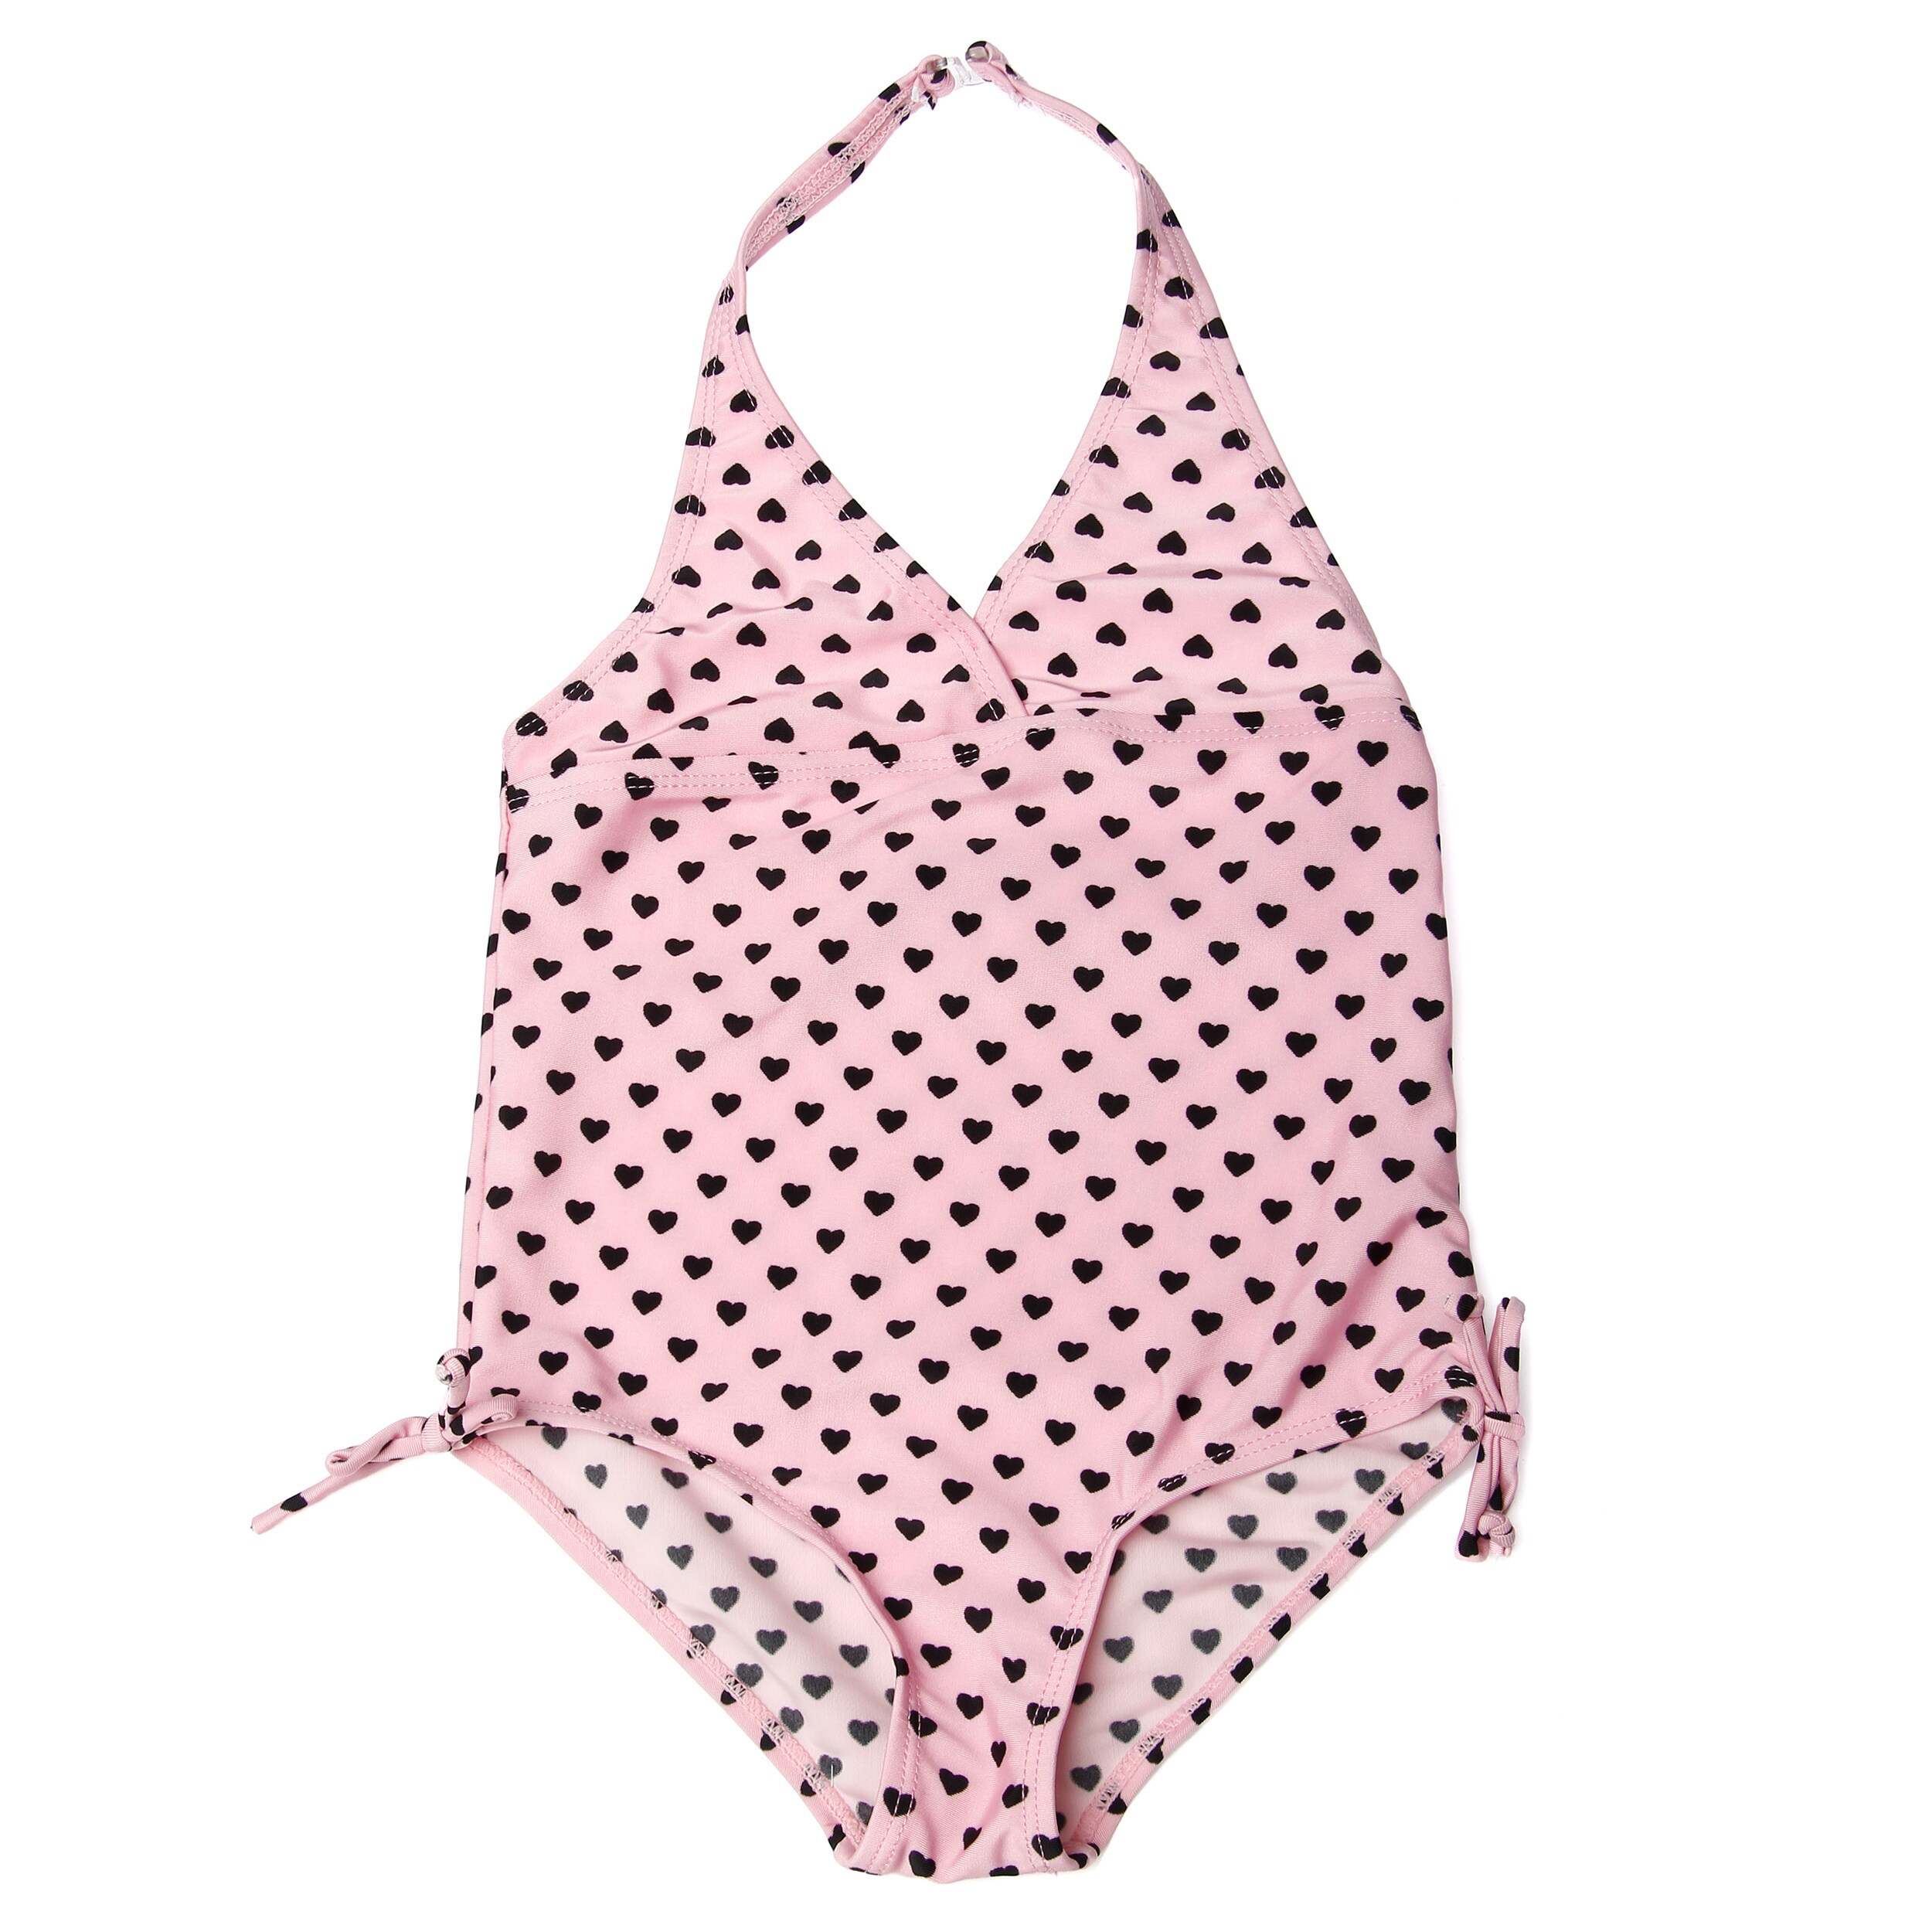 Ingear Girls Pink Heart pattern One piece Swim Suit